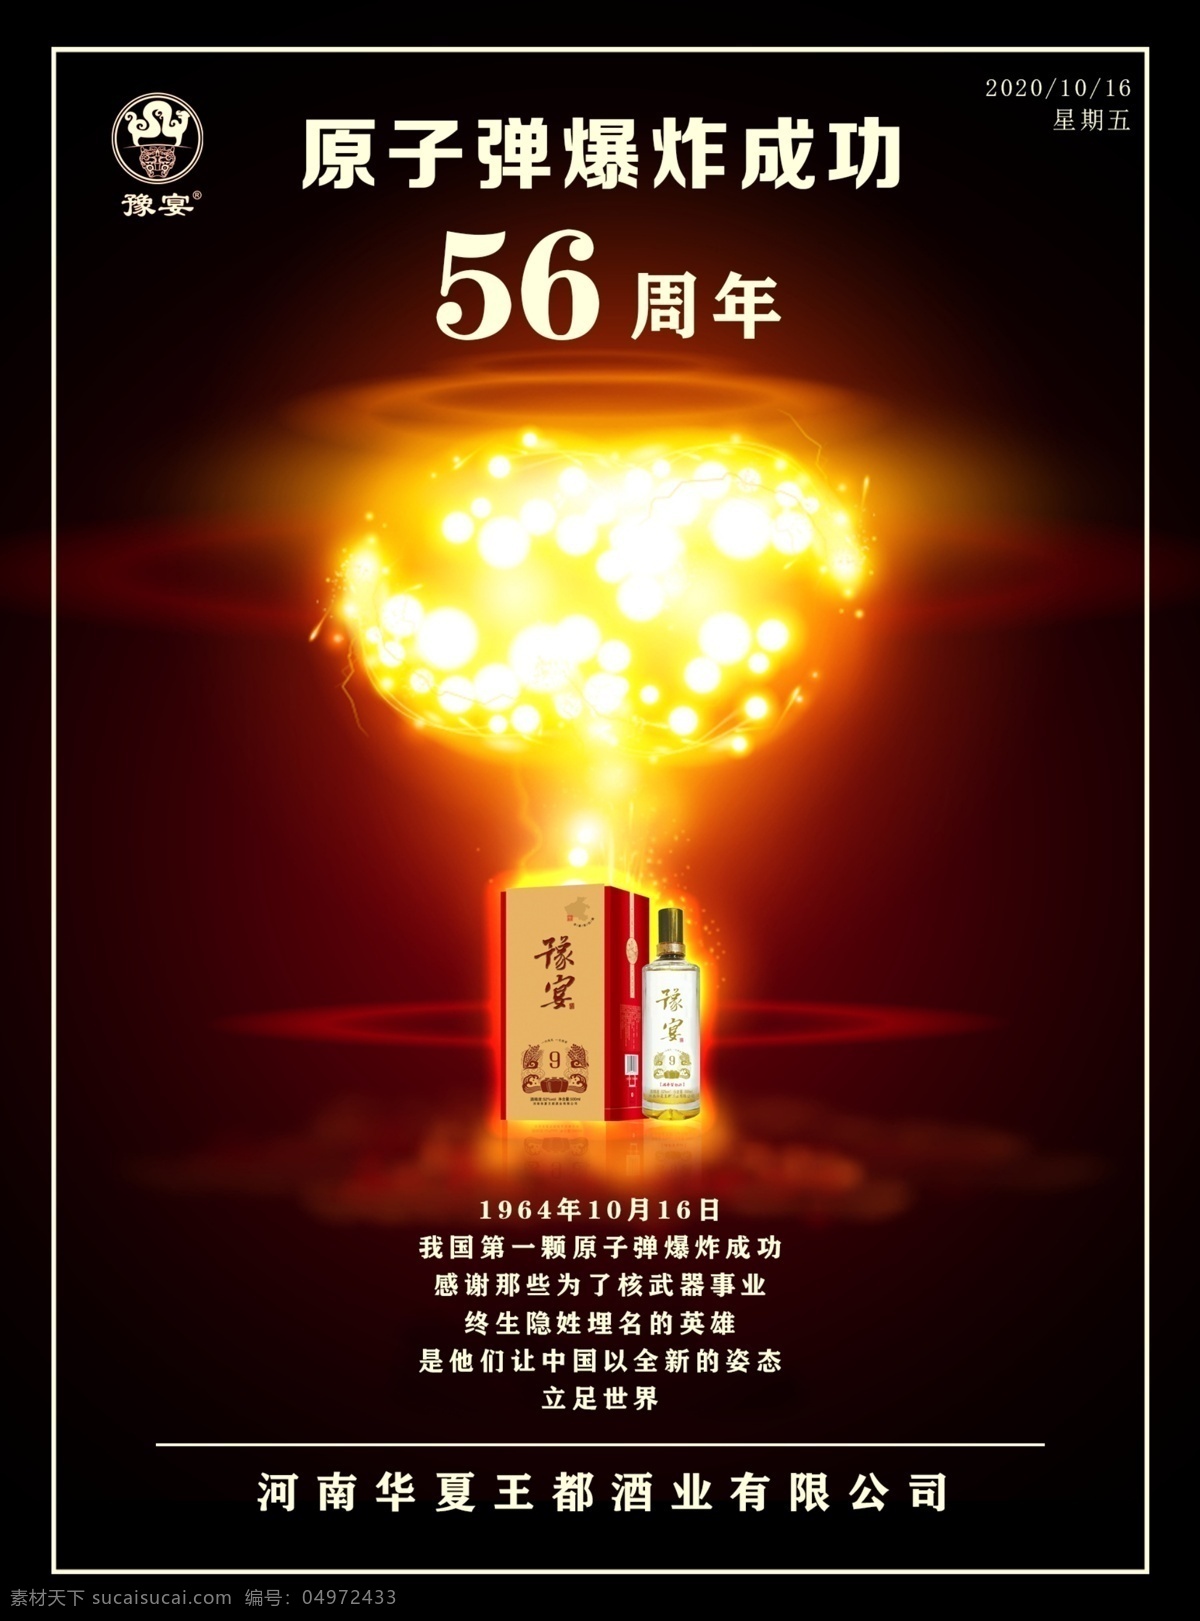 原子弹图片 56周年 原子弹爆炸 酒 纯粮 豫宴